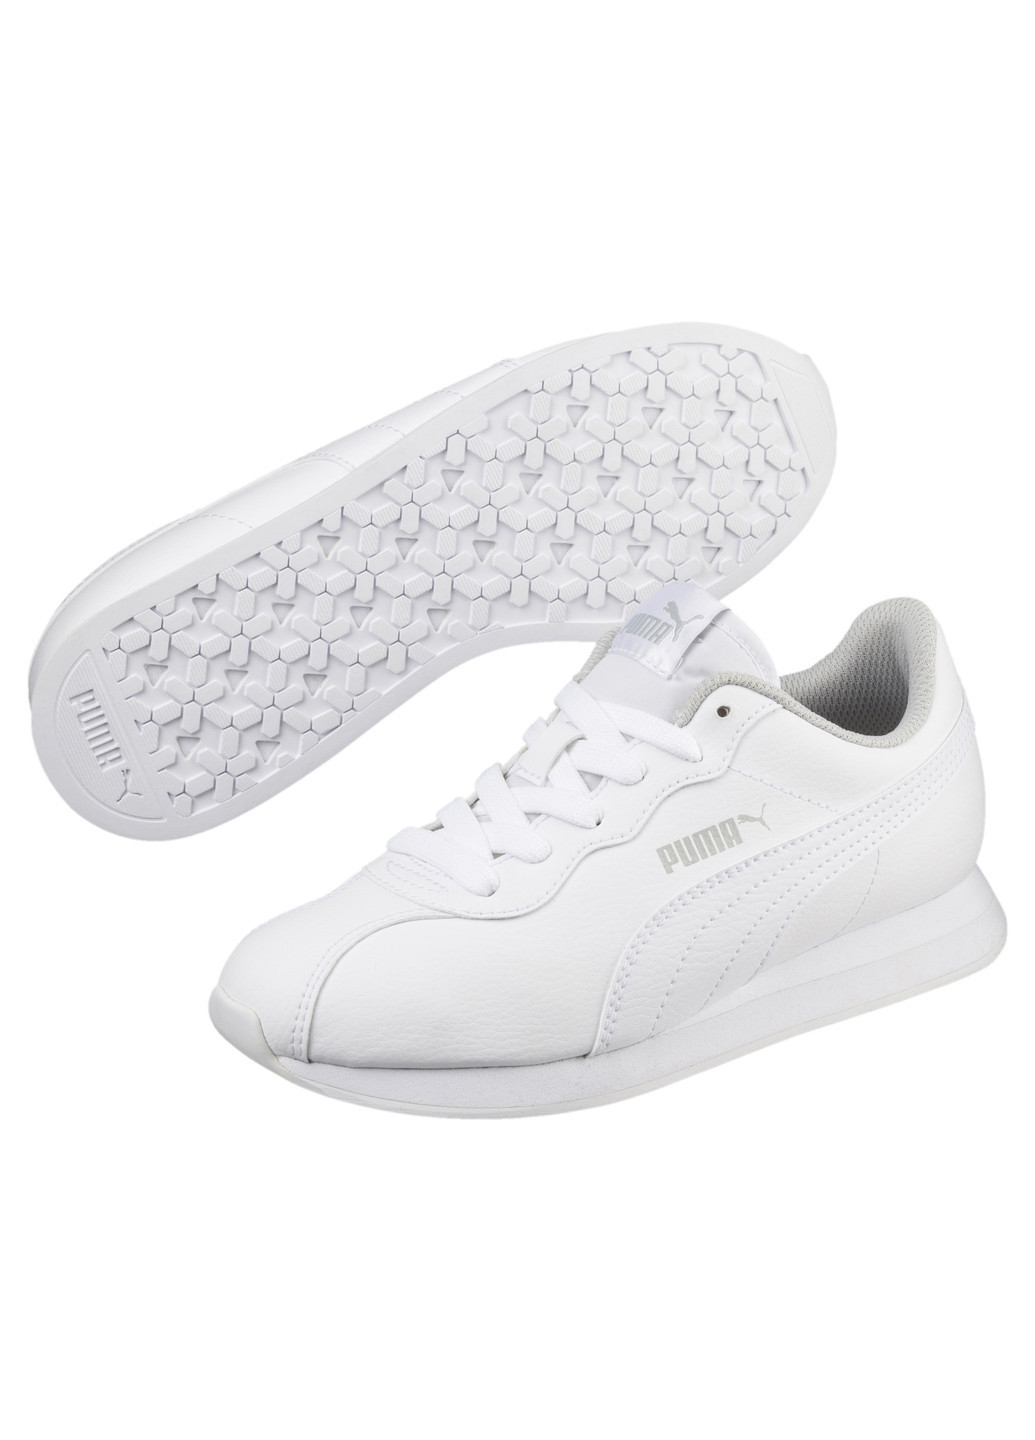 Белые всесезонные кроссовки Puma Turin II Jr